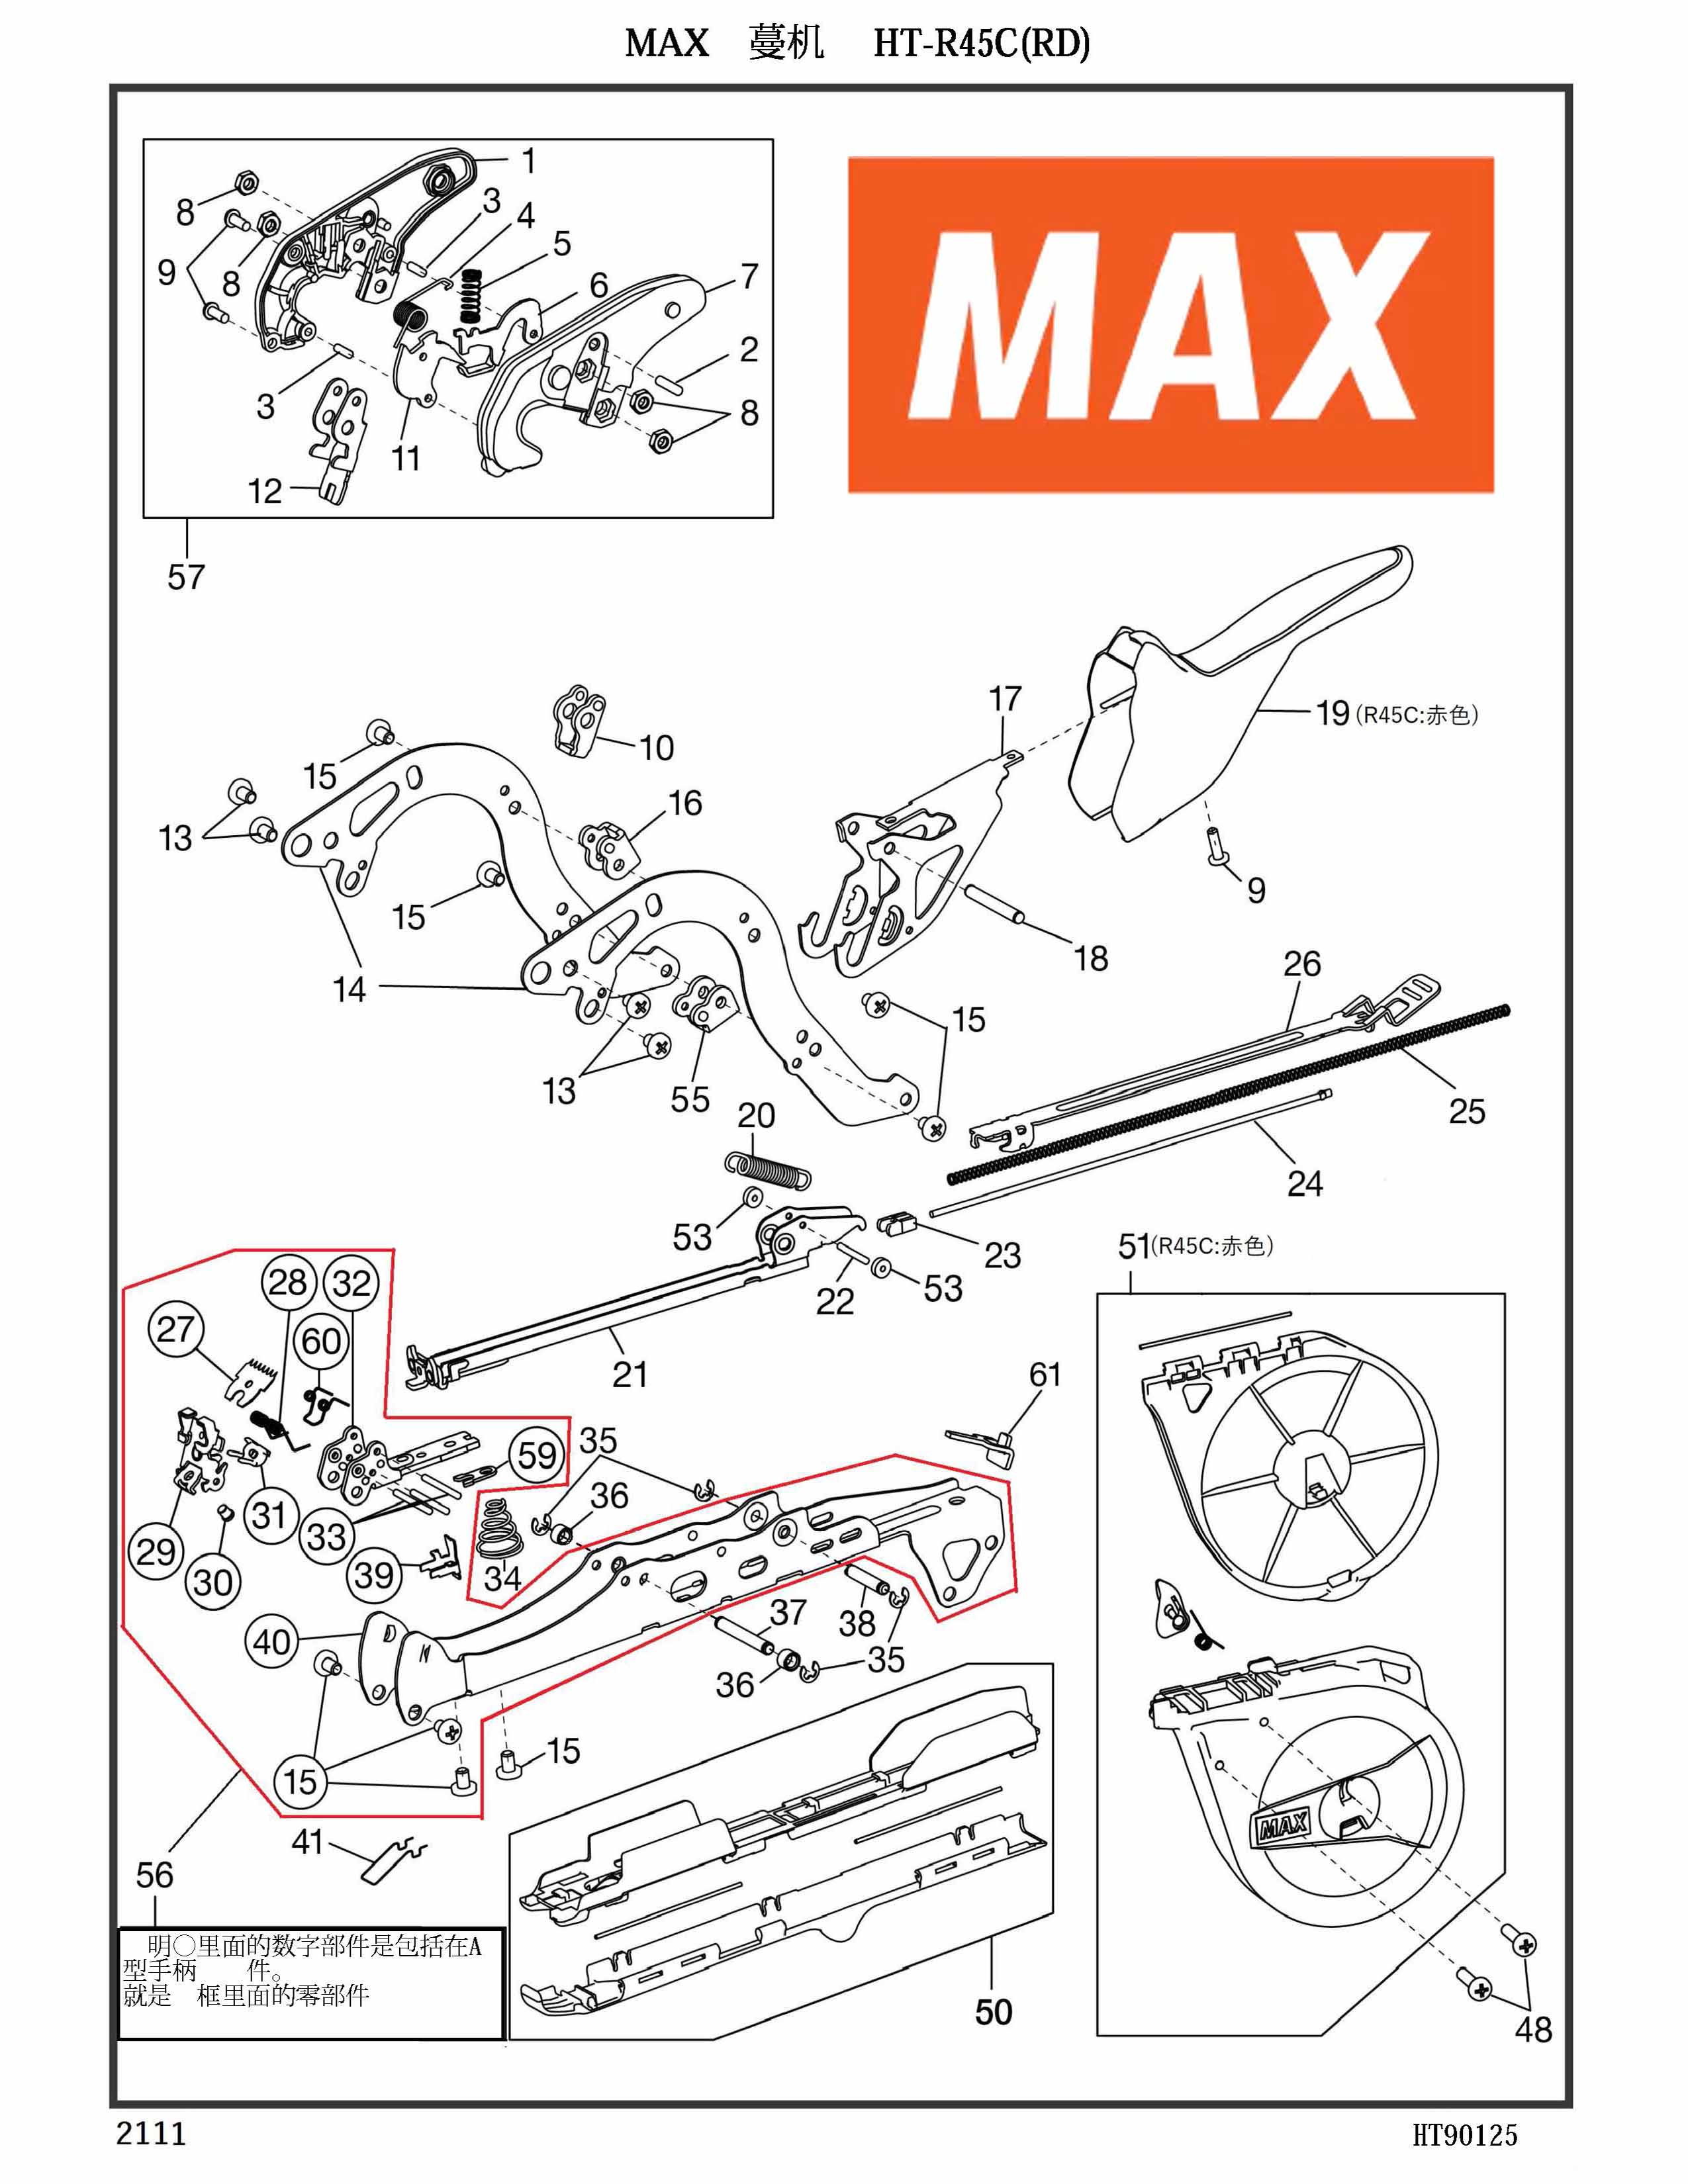 MAX Tapener Part AA25537 SCREW BIND M4X6 Fits MAX HT-R45L(O) R45C(RD) HT-S45E HT-R1 HT-R2 #13